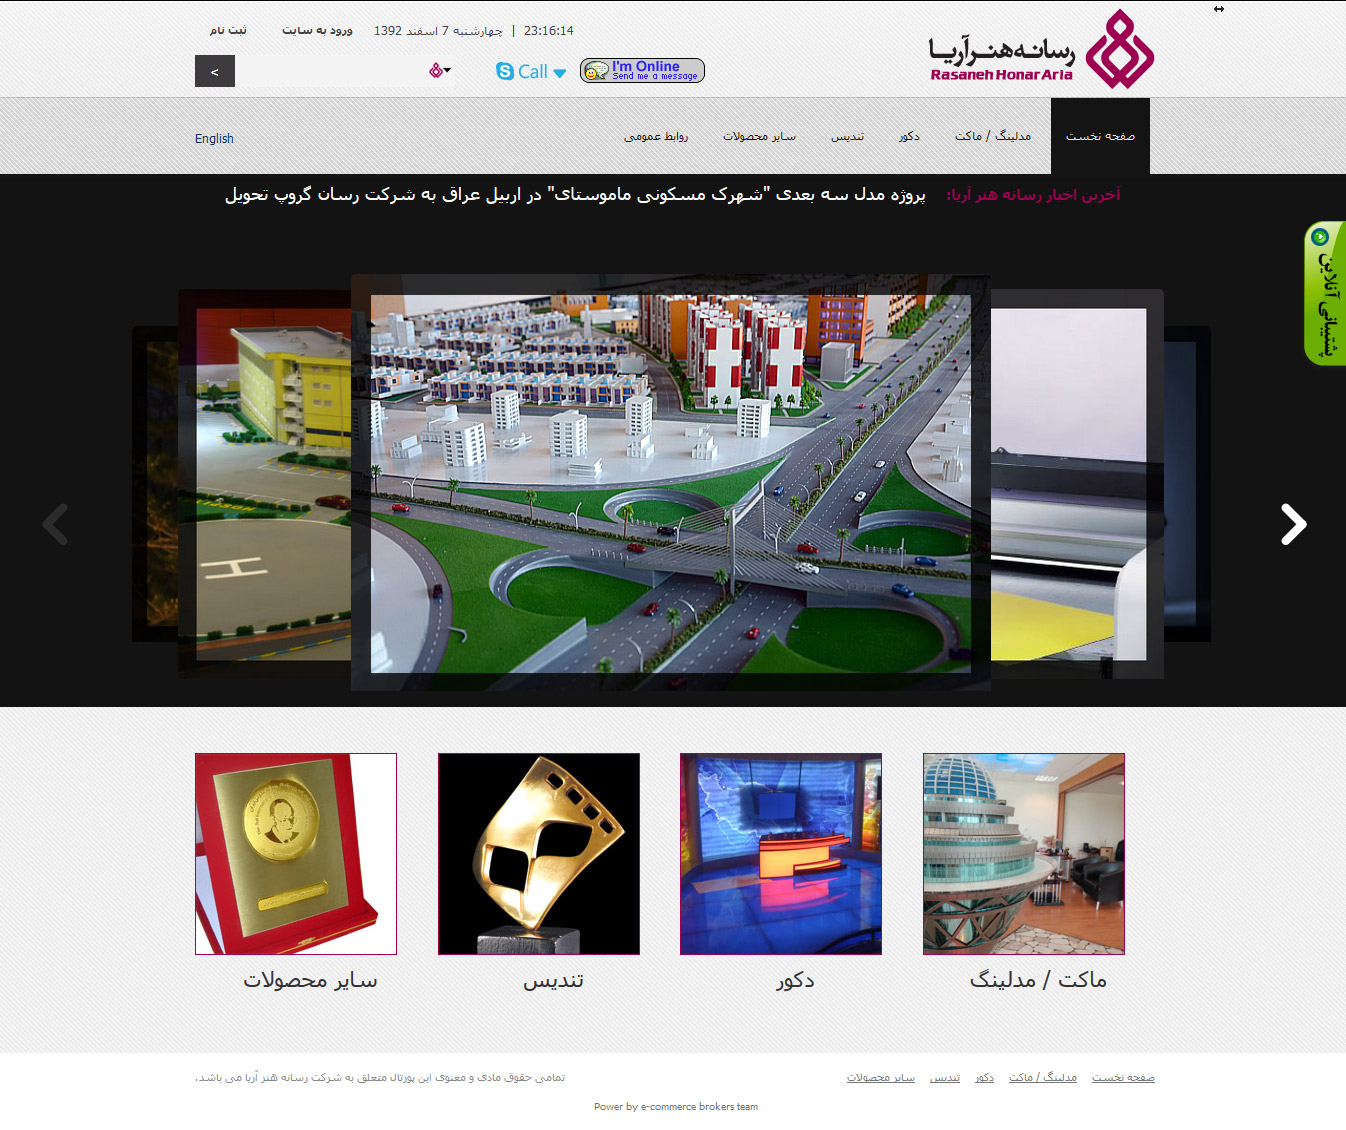 تصویری از صفحه نخست وب‌سایت شرکت رسانه هنر آریا